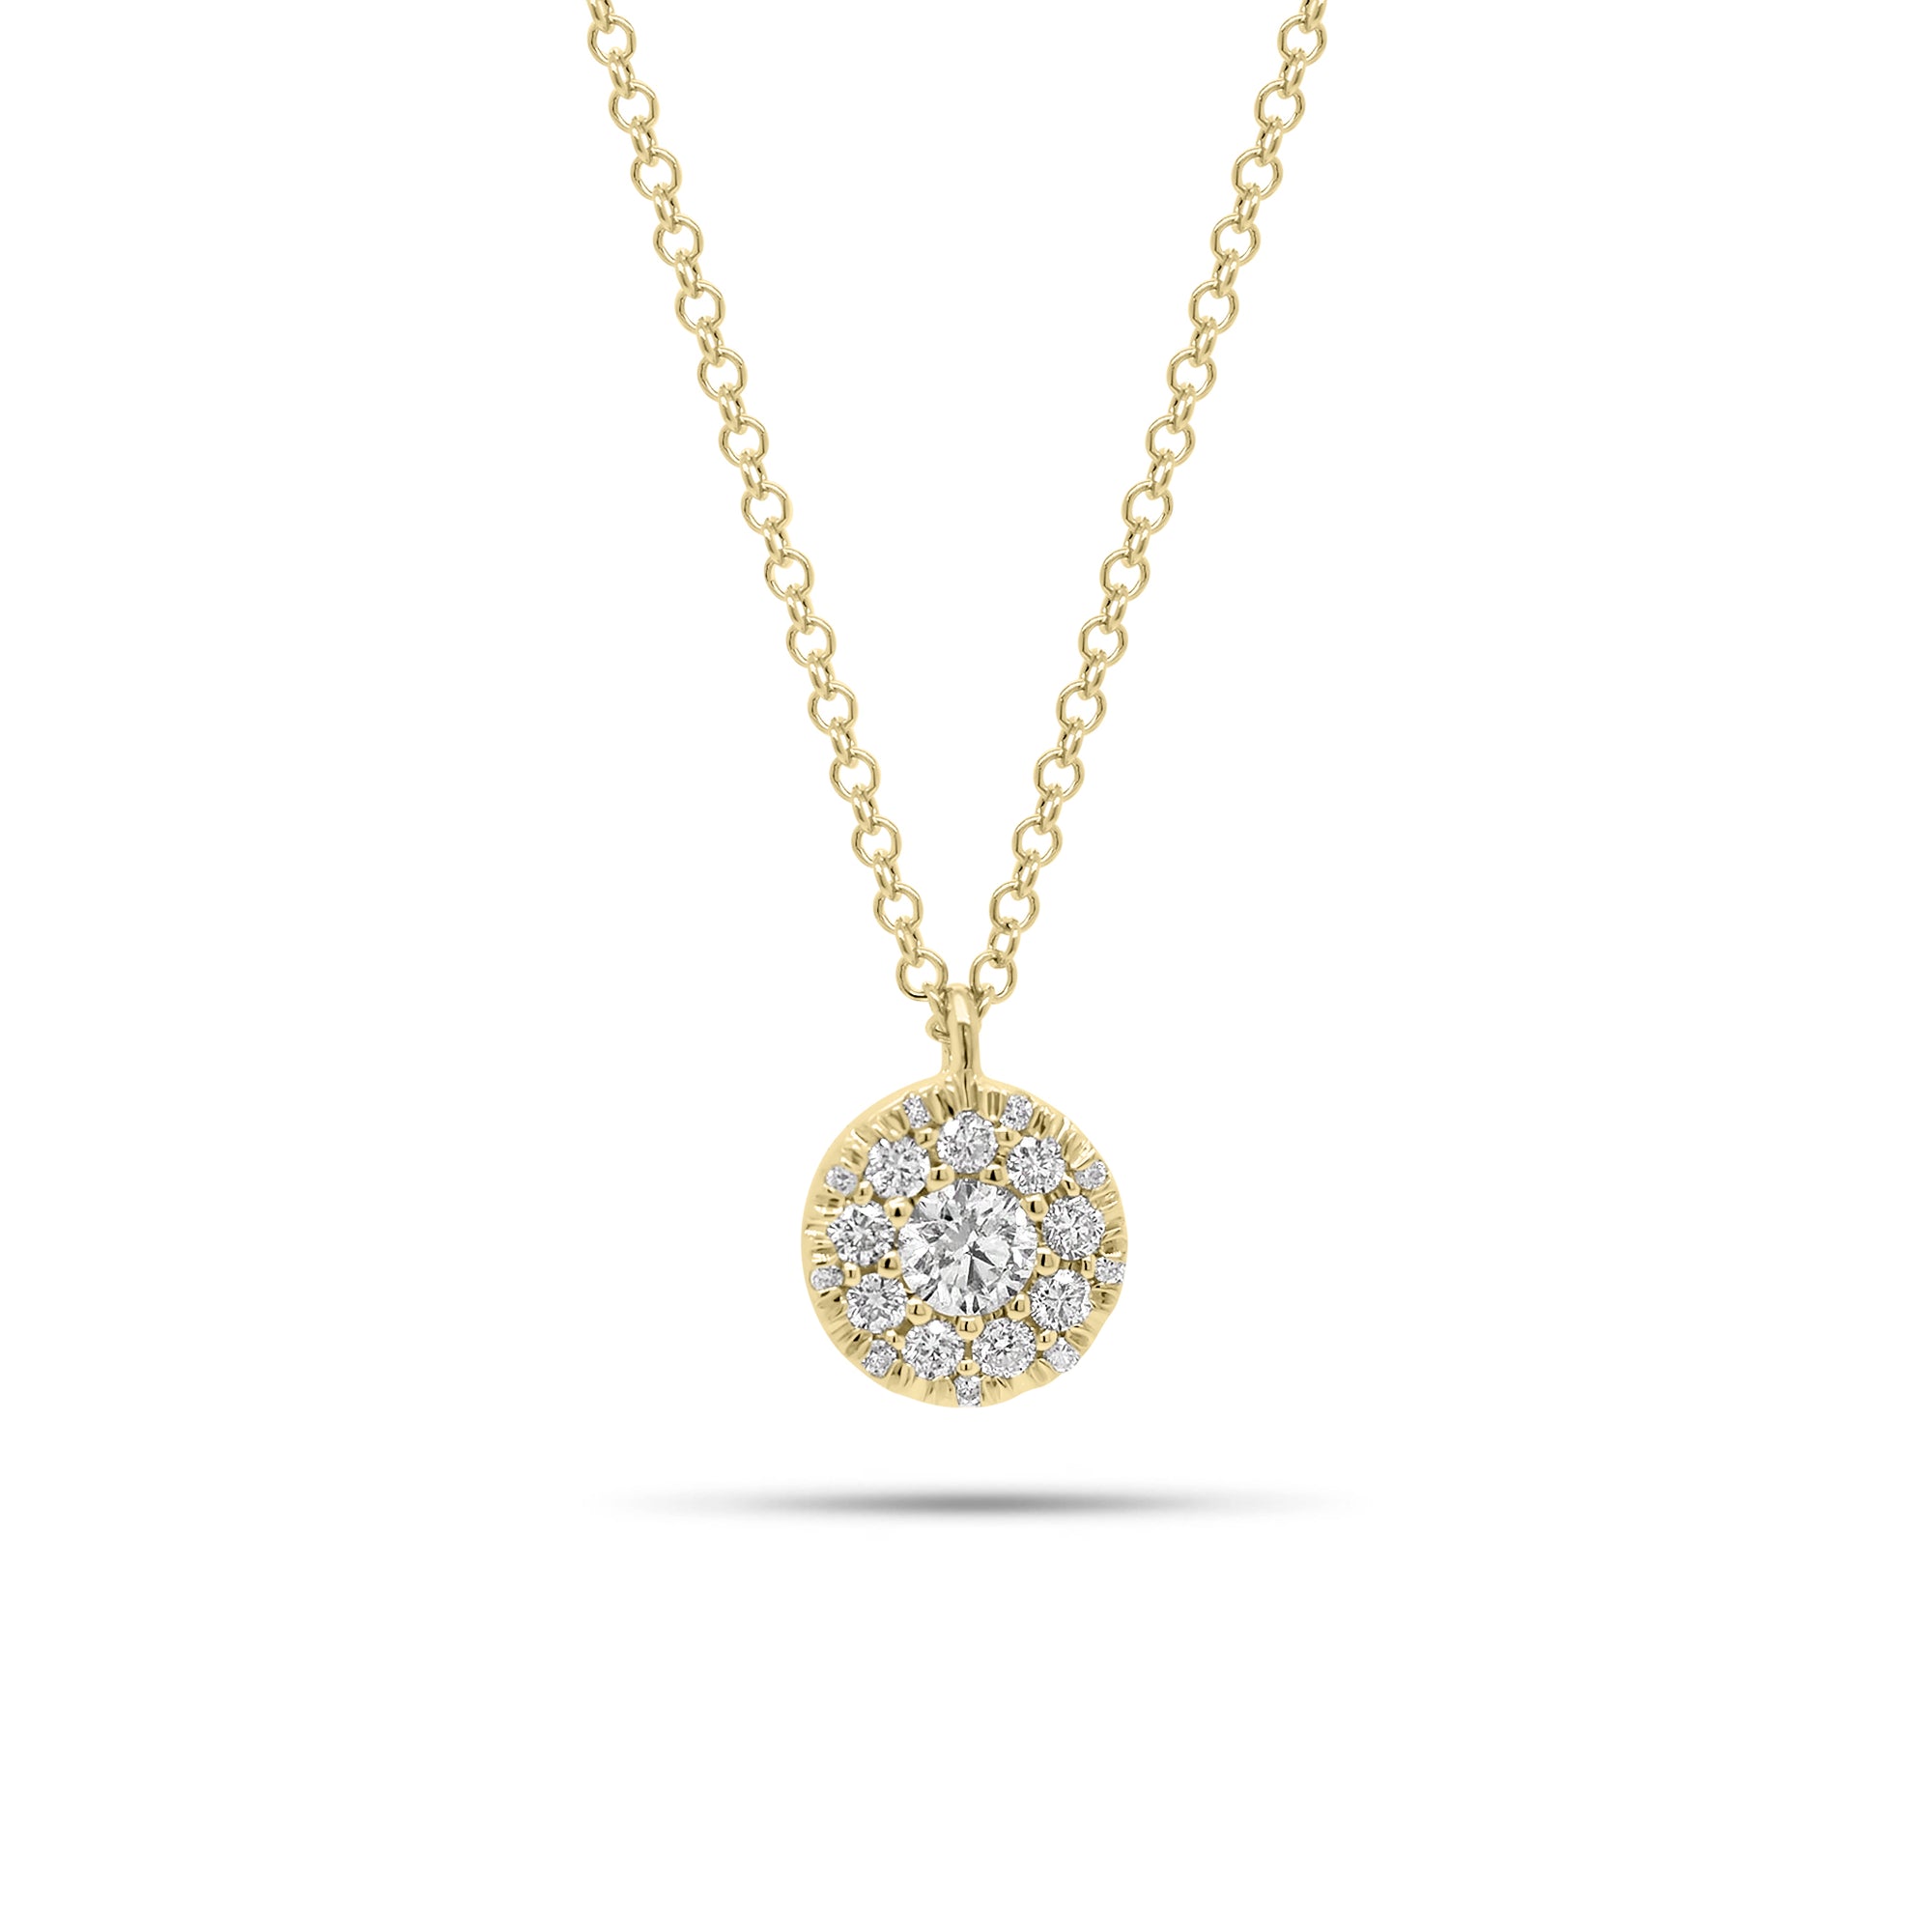 Multi-Diamond Circle Pendant - 14K gold weighing 2.20 grams  - 19 round diamonds weighing 0.23 carats